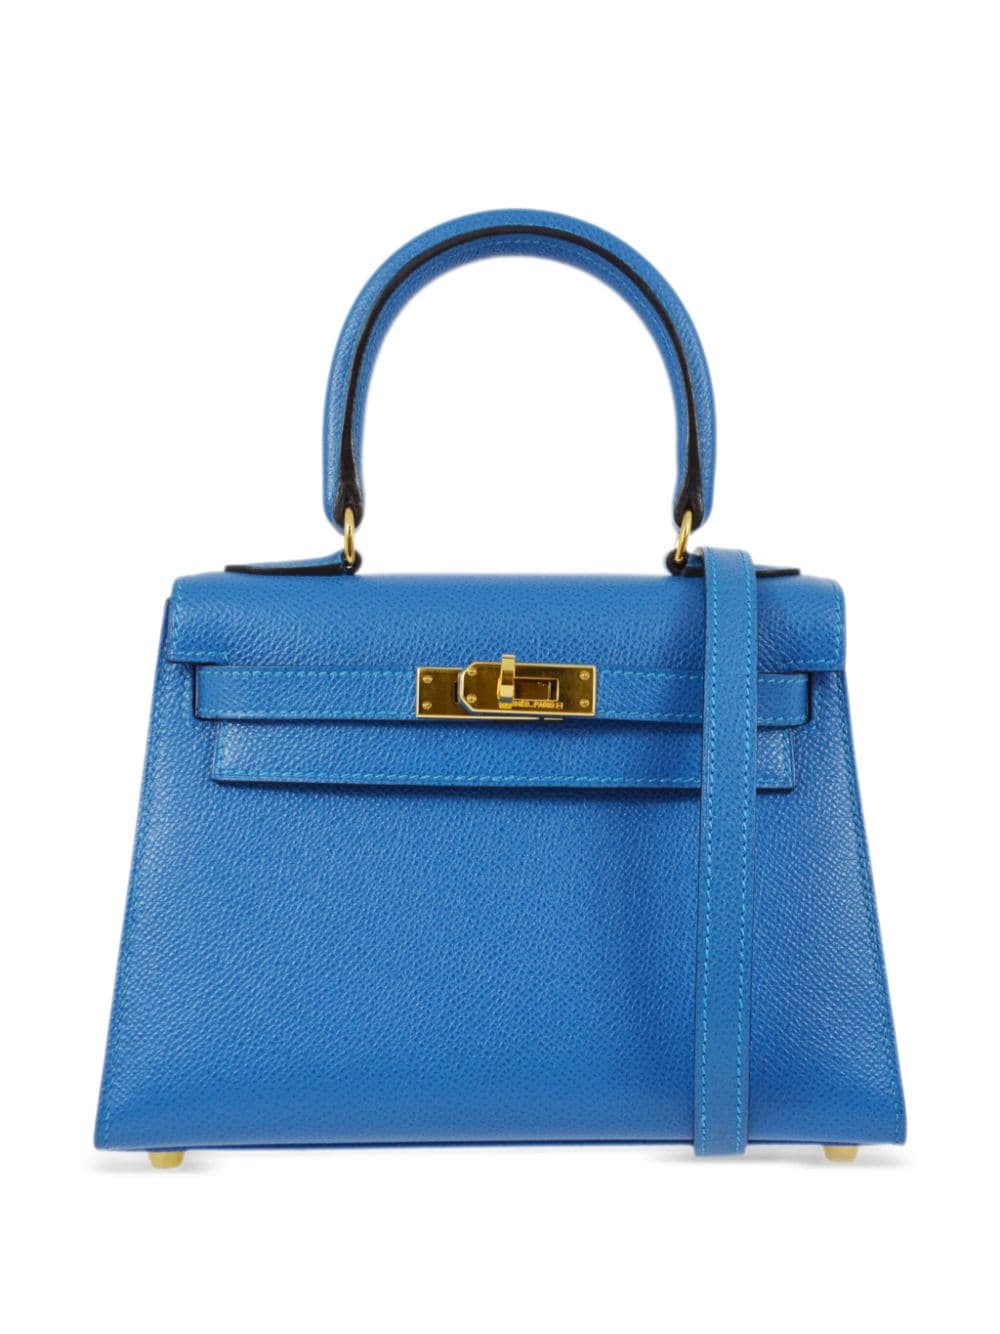 Hermès Pre-Owned 2003 Kelly 20 two-way handbag - Blue von Hermès Pre-Owned